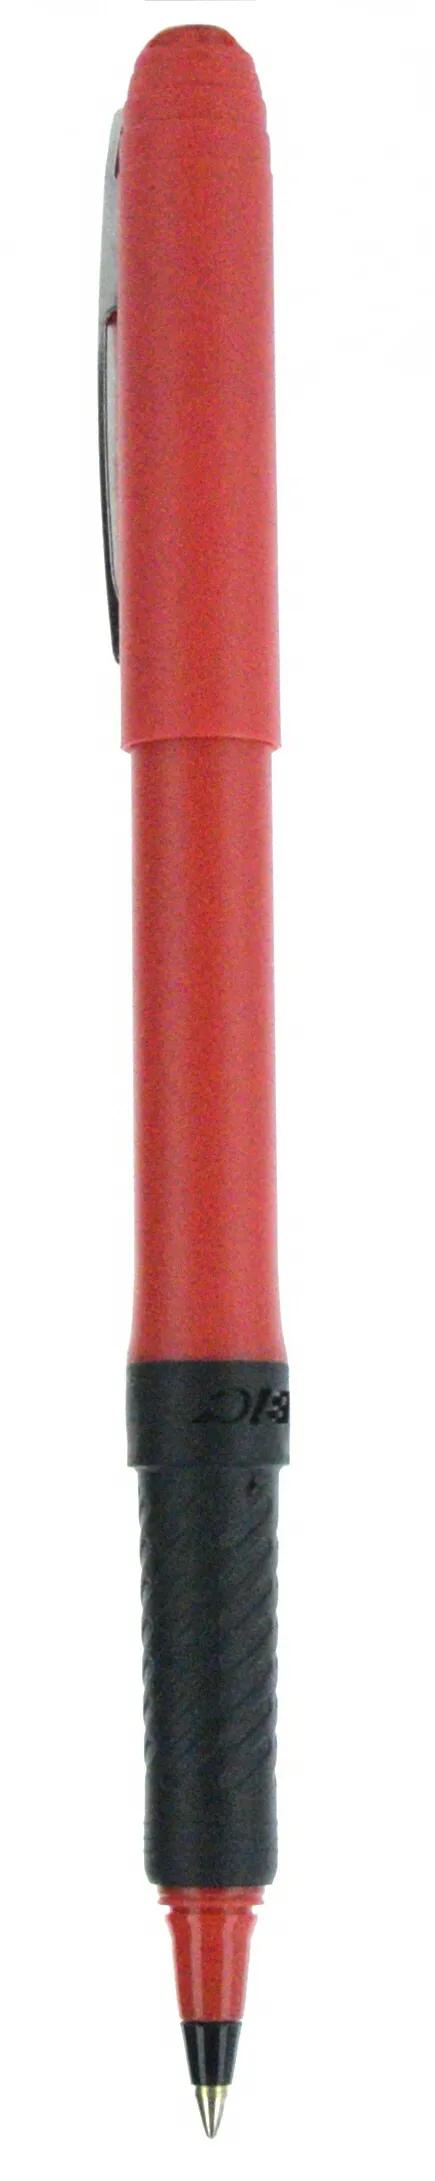 BIC® Grip Roller Pen 107 of 147